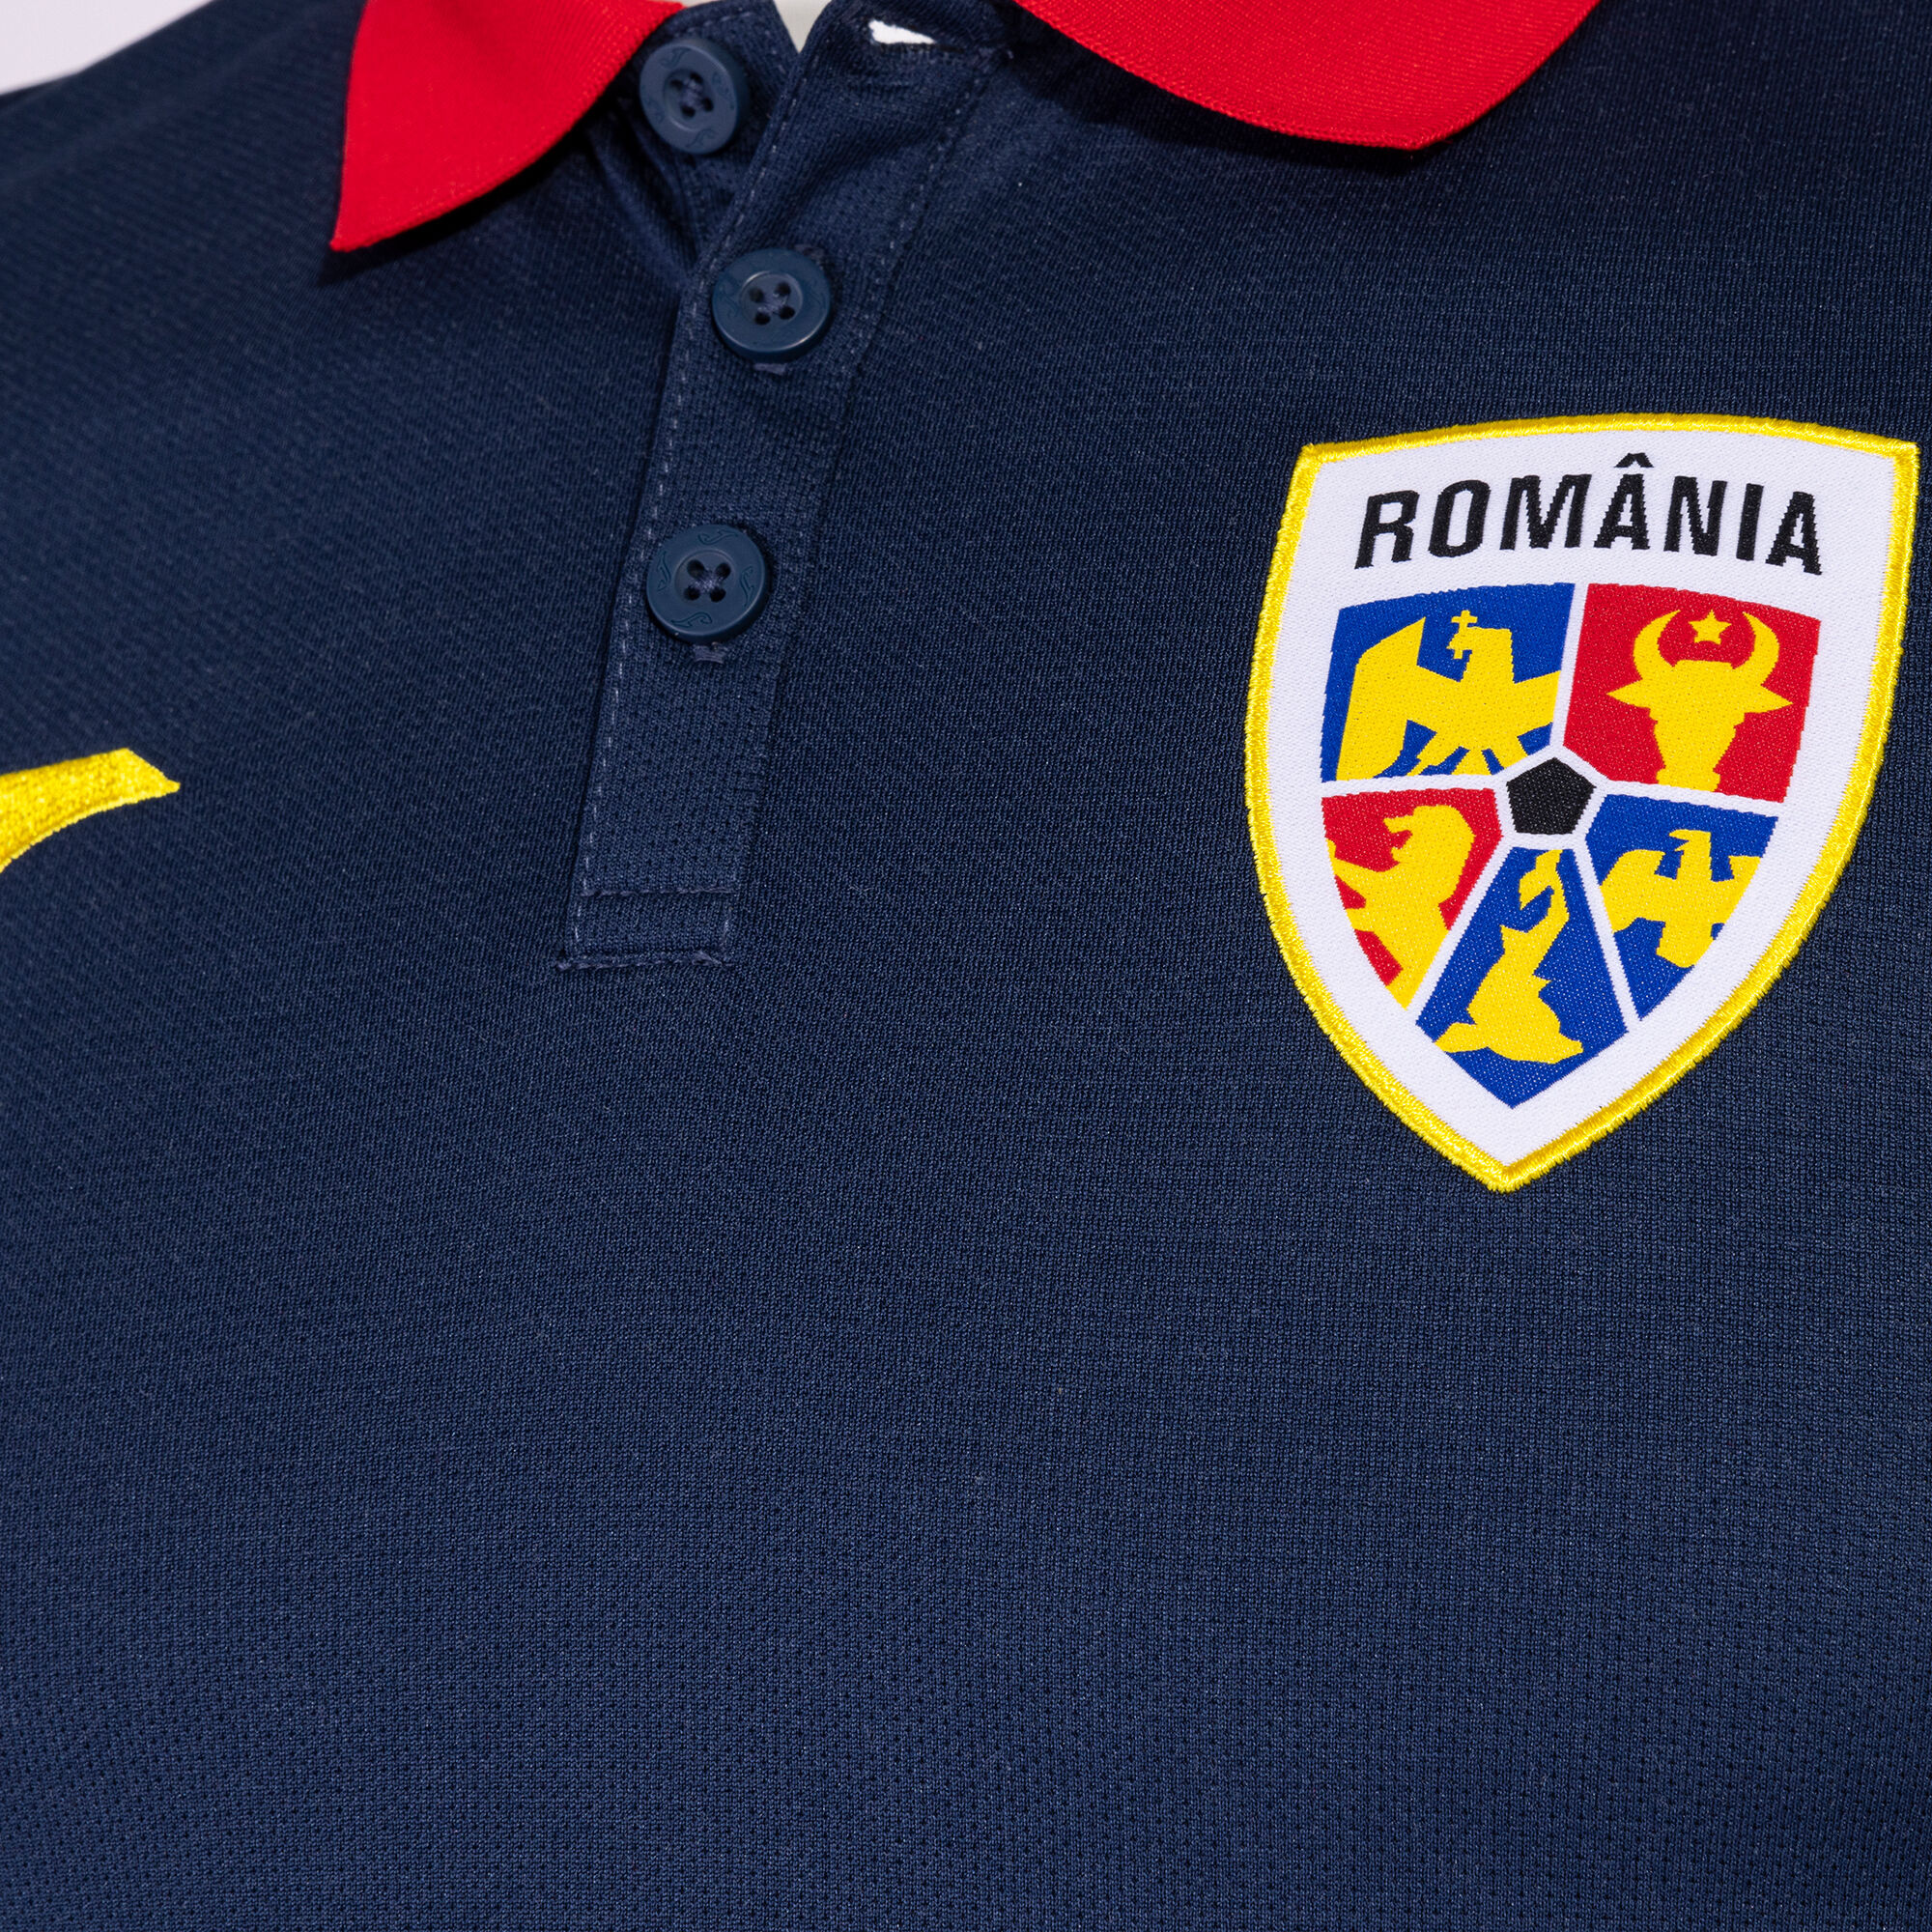 Polo z krótkim rękawkiem personel techniczny marsz Rumuńska Federacja Piłki Nożnej